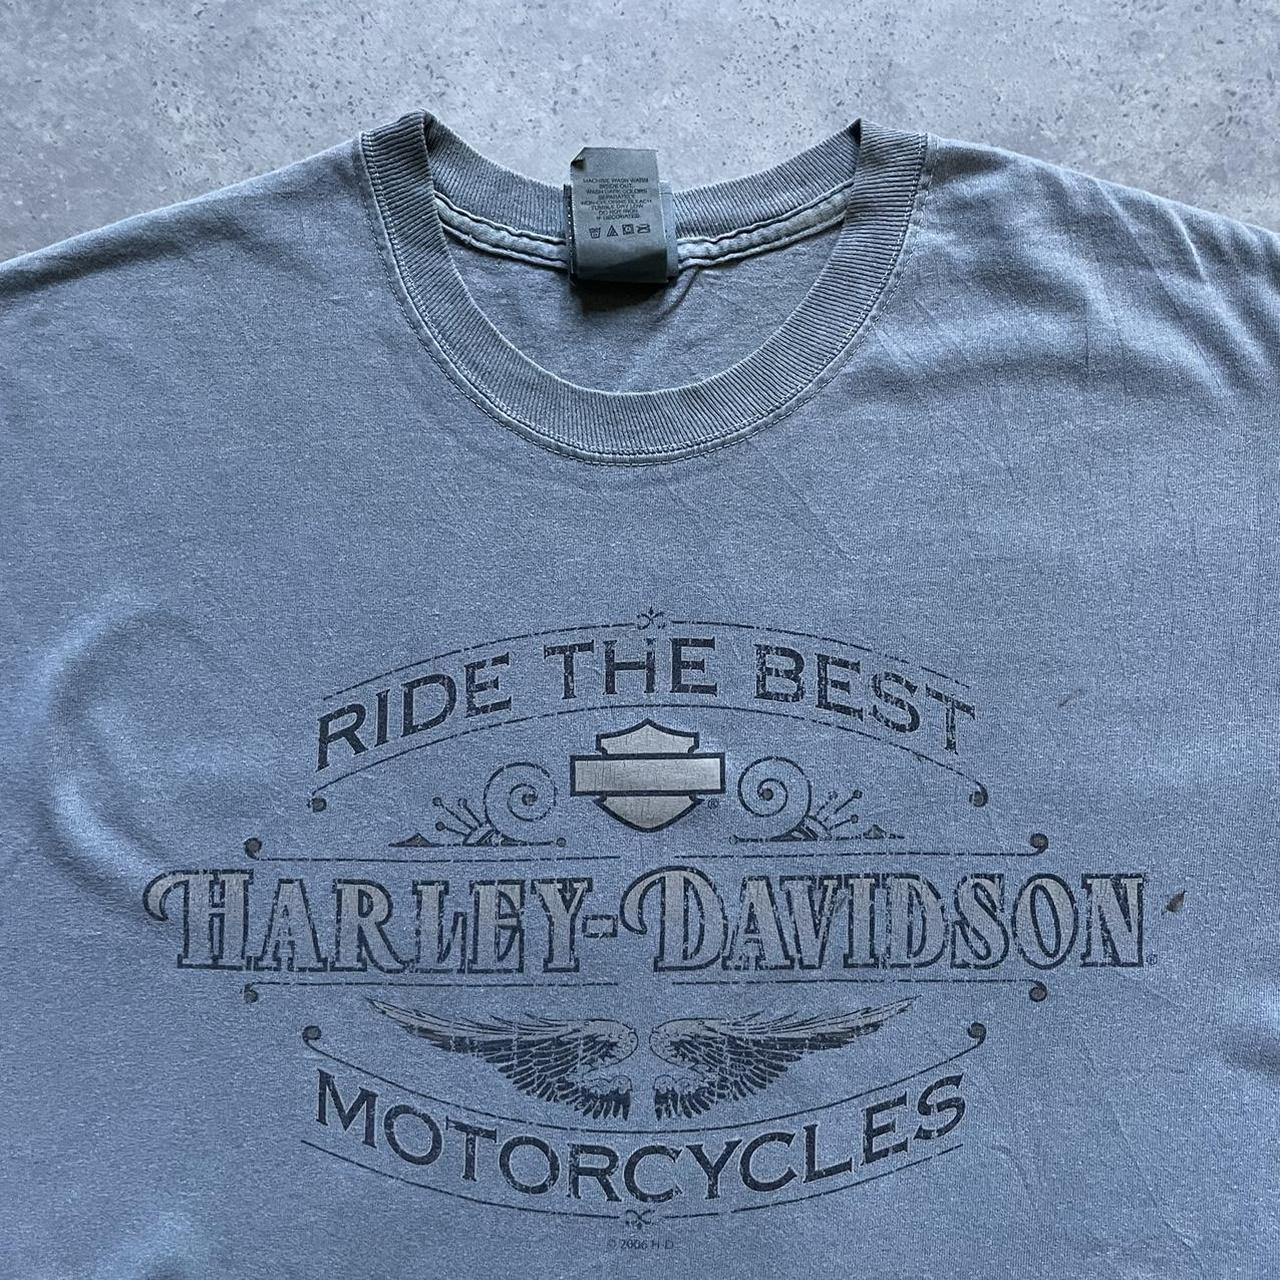 Harley Davidson tshirt Vintage 90s Harley Davidson... - Depop